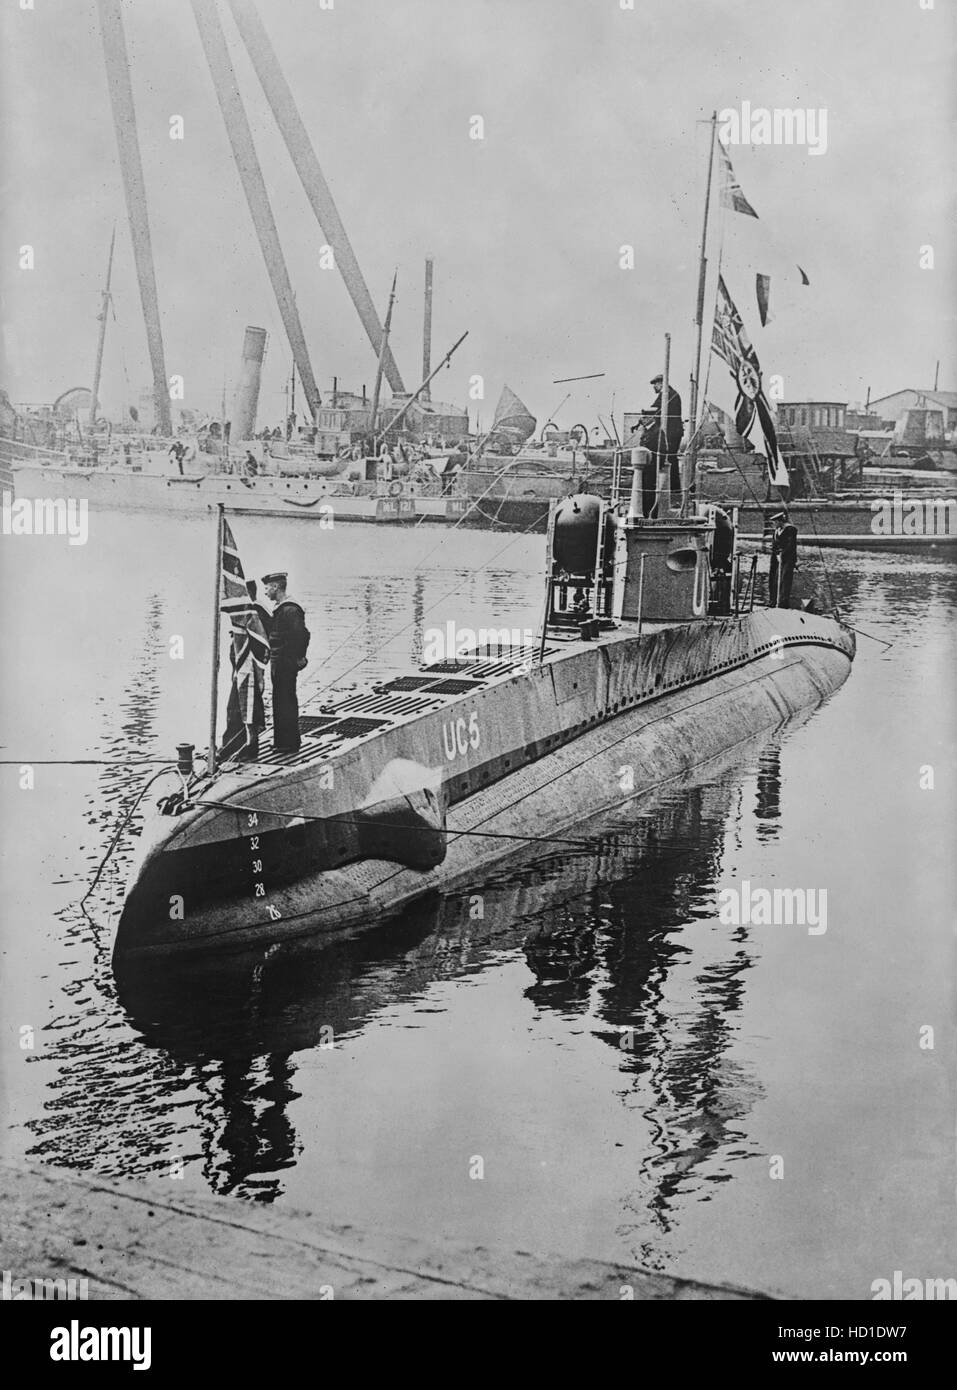 Mine-Layer UC-5 Sous-marin allemand capturé par les forces britanniques, Bain News Service, 27 avril, 1916 Banque D'Images